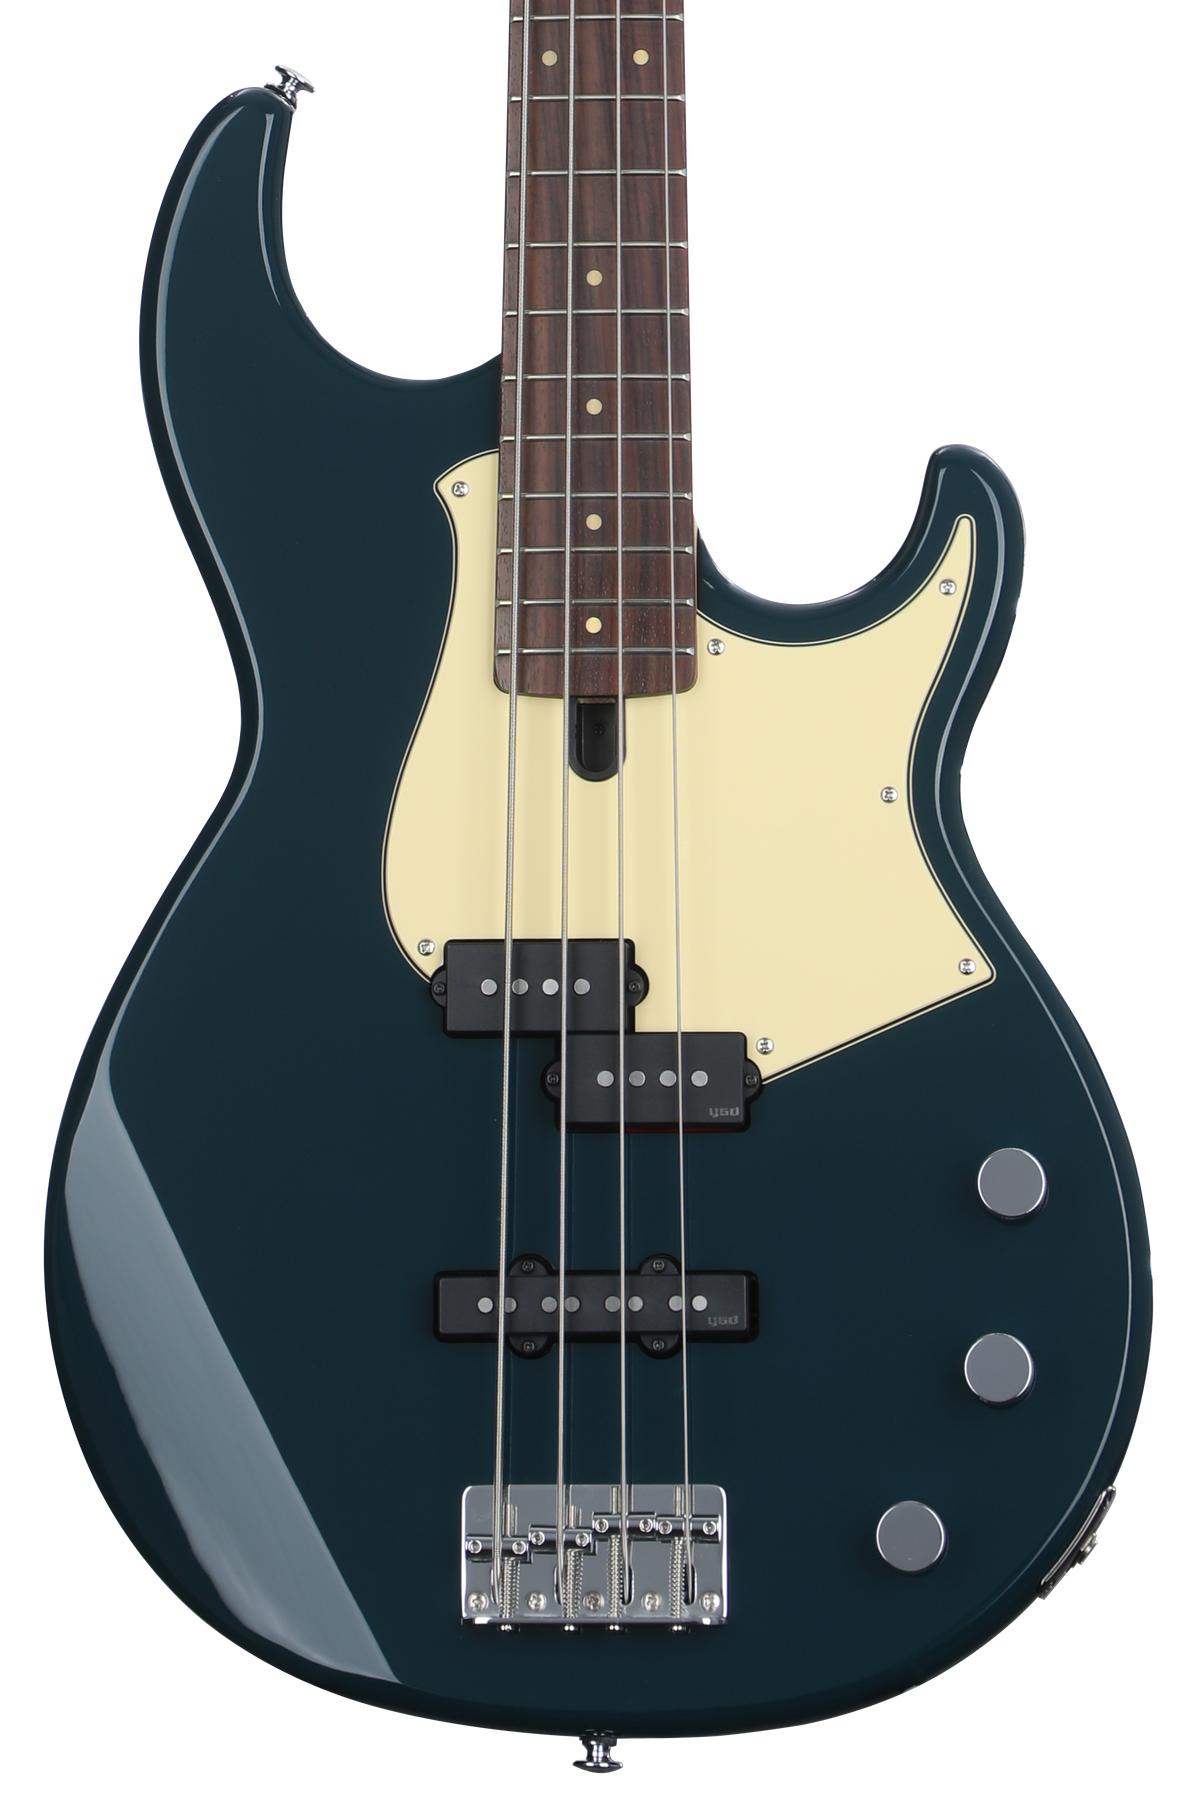 Yamaha BB434 Bass Guitar - Teal Blue | Sweetwater